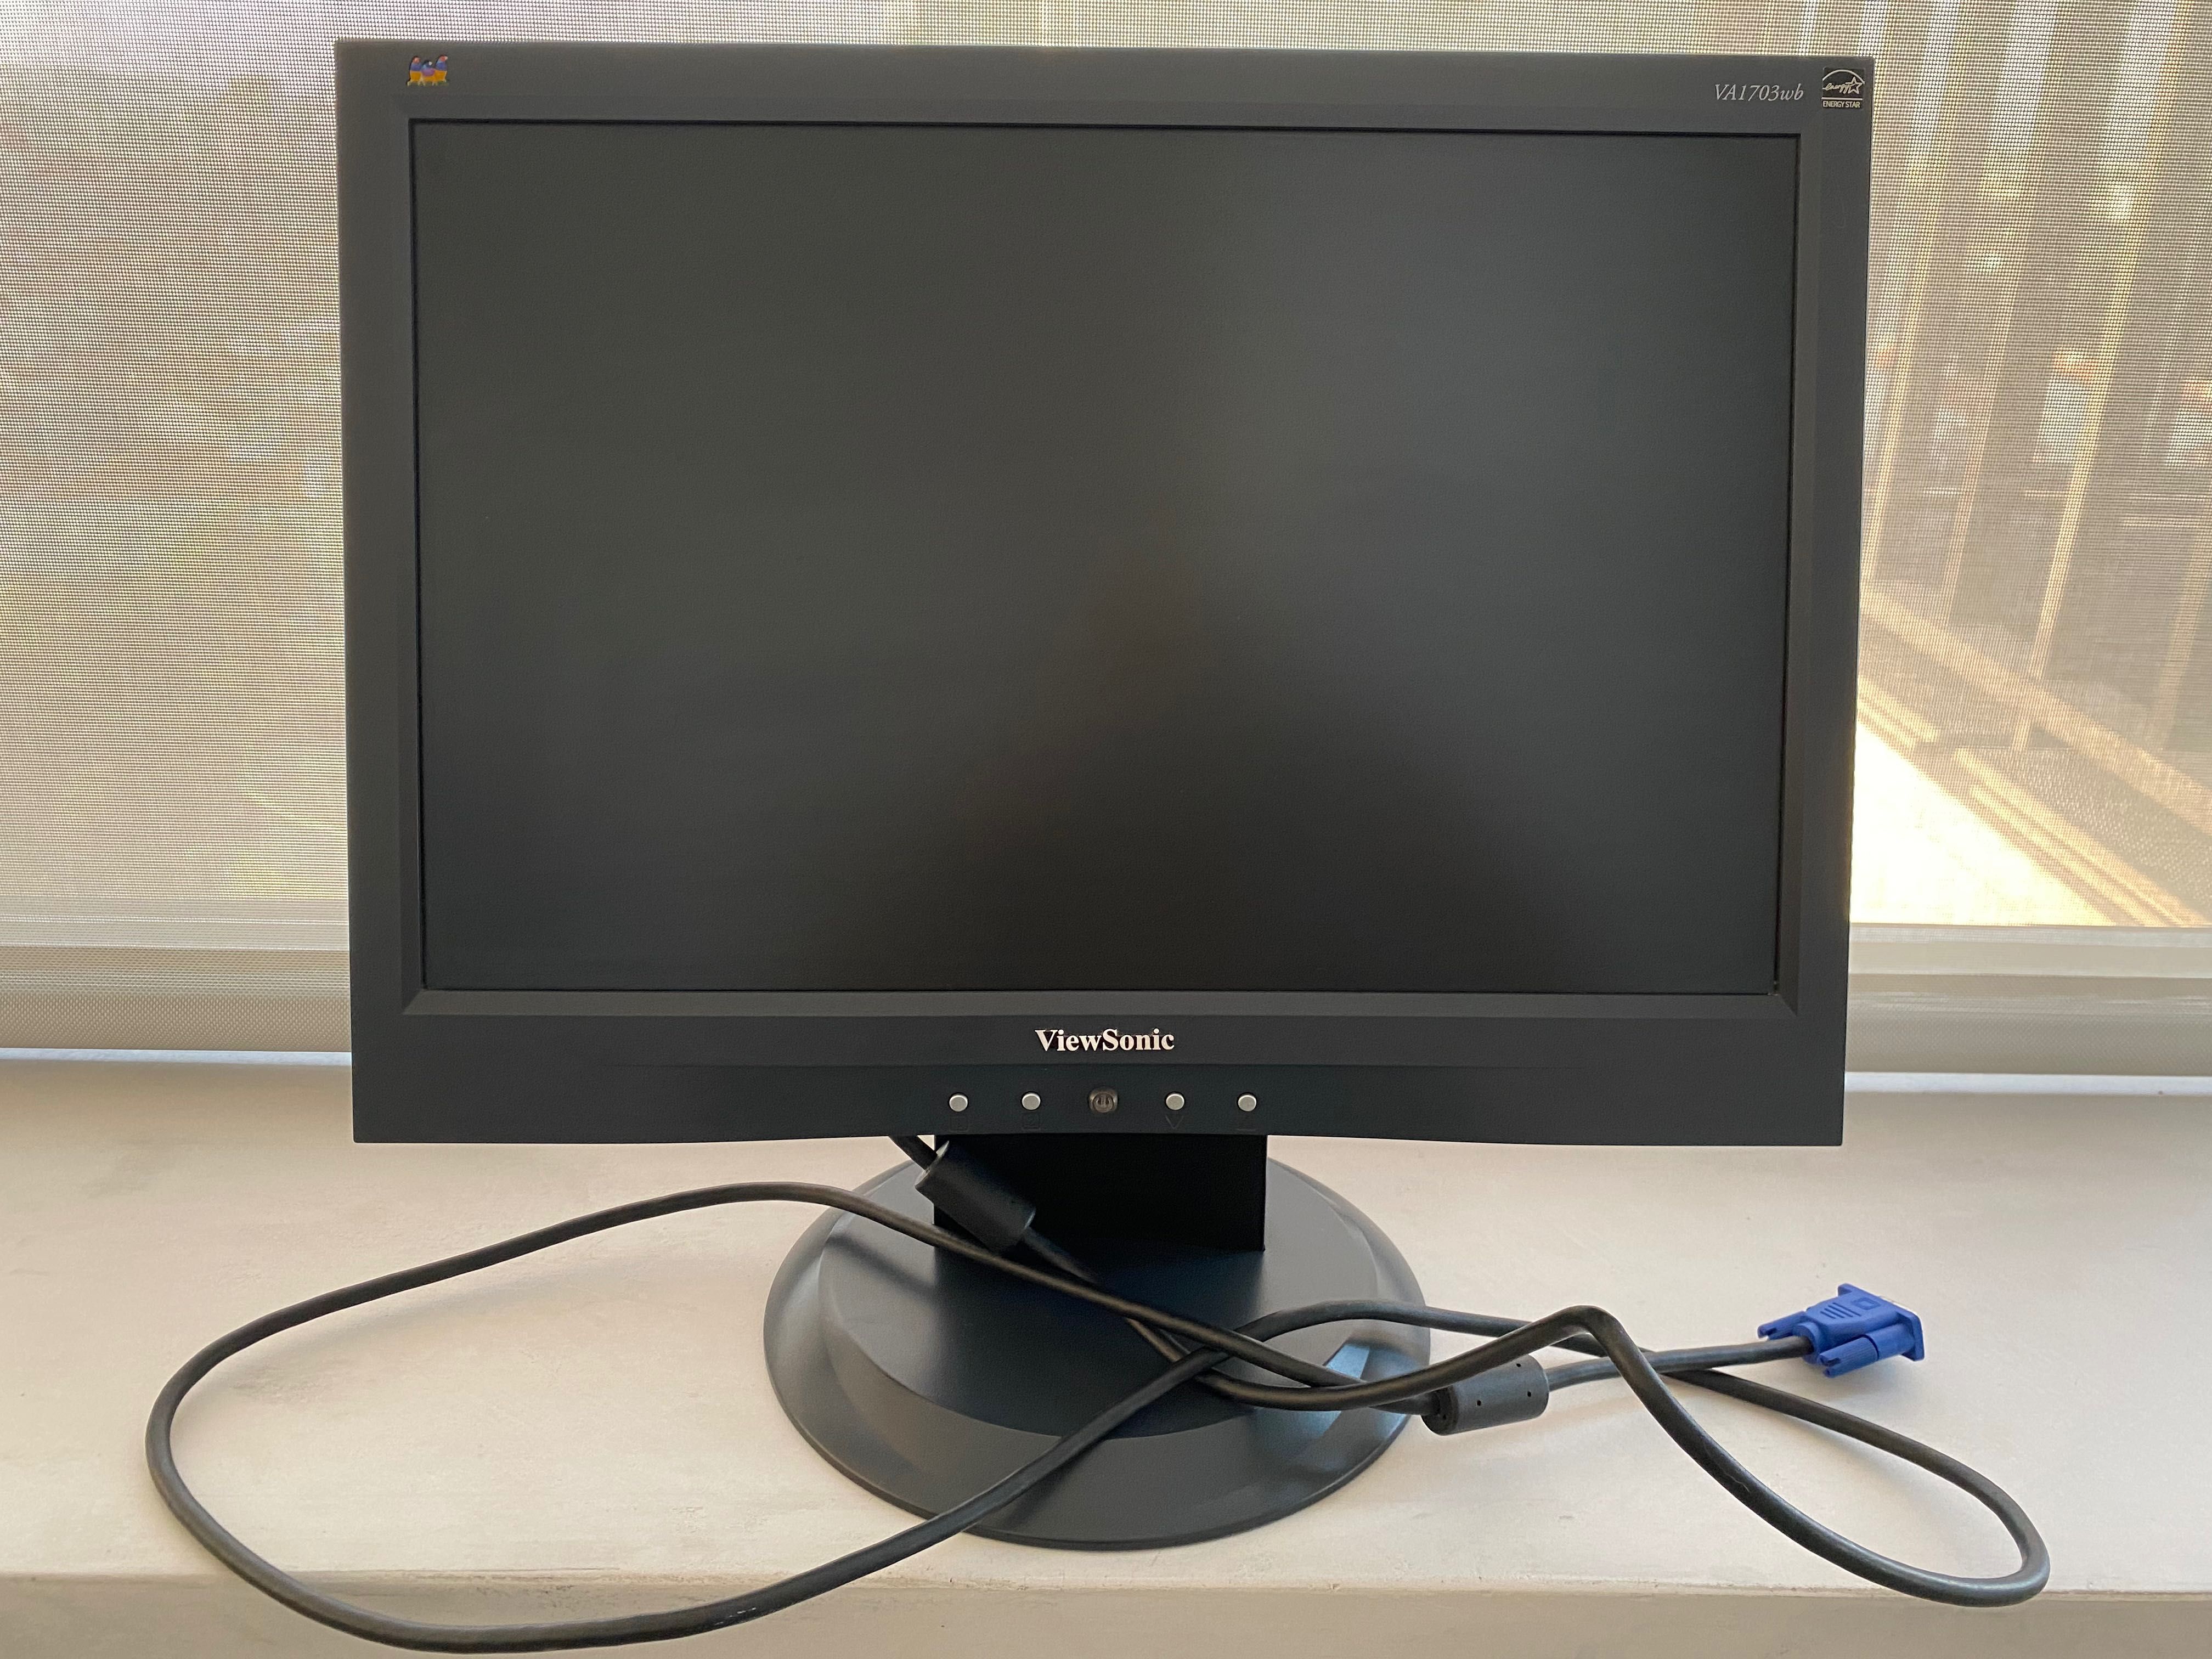 Monitor/ecrã da View Sonic 17” com cabo vga